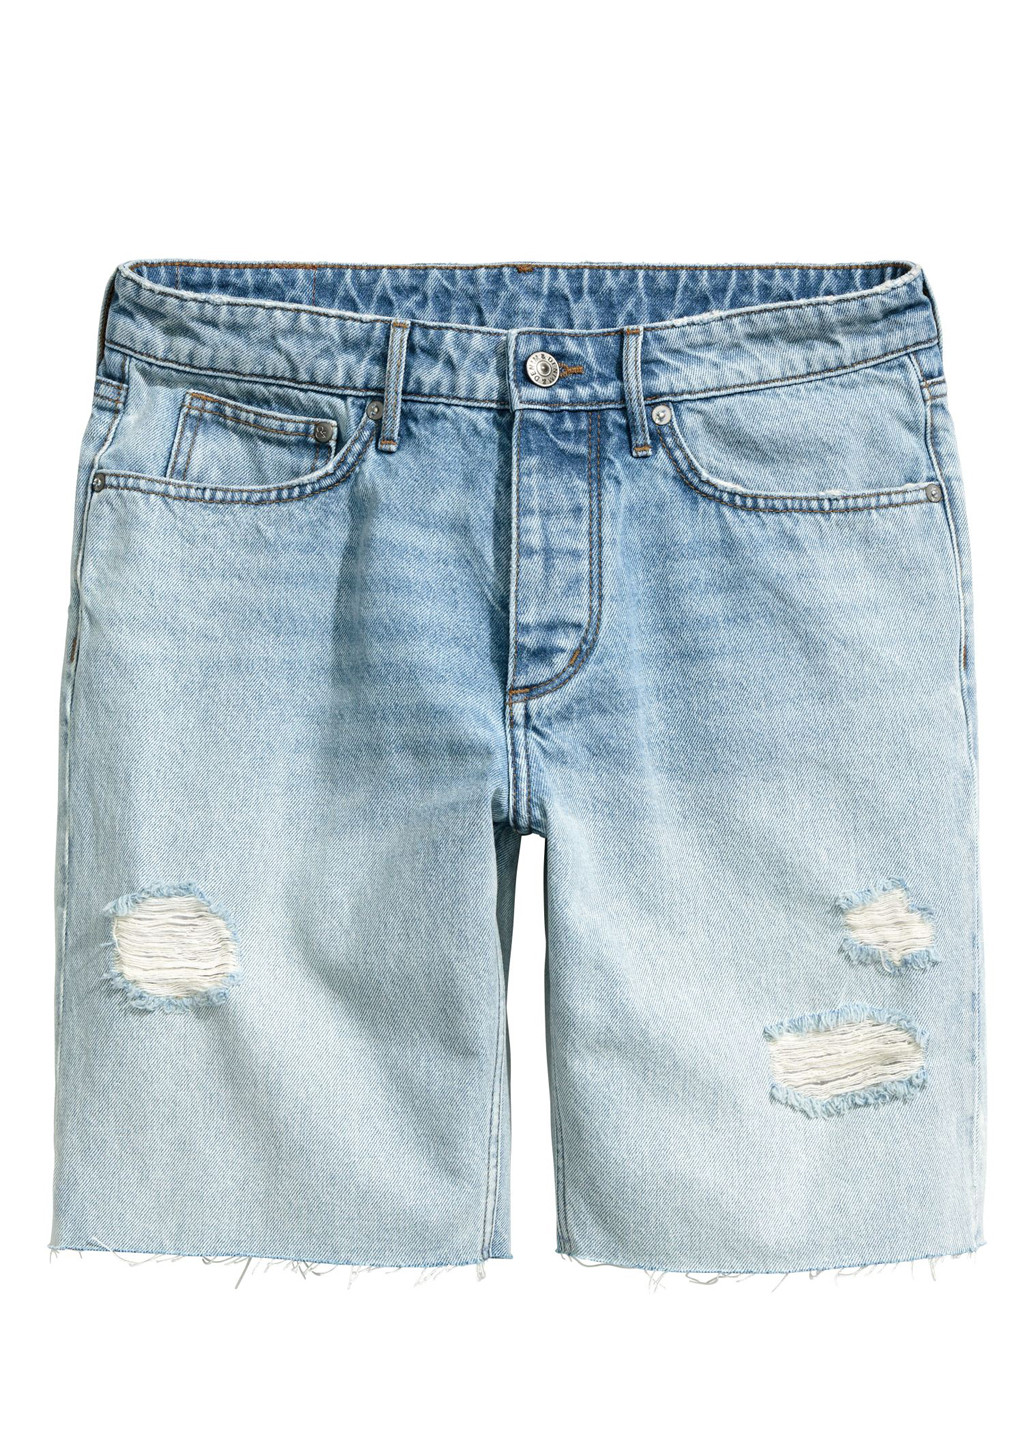 Шорты H&M однотонные светло-голубые джинсовые хлопок